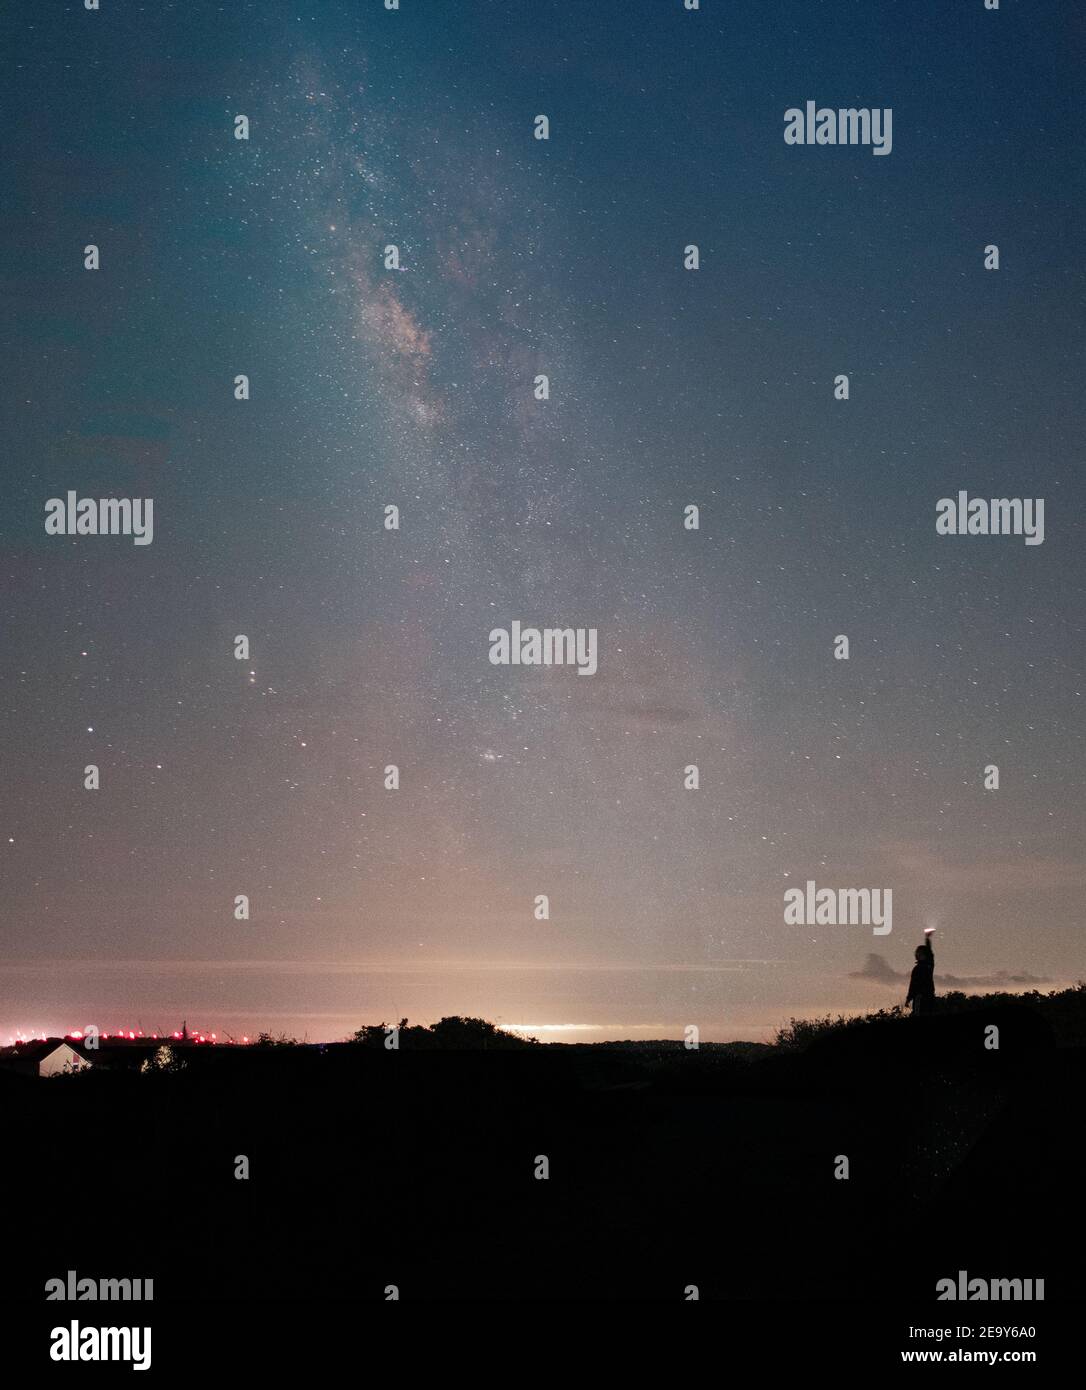 Mann hält eine Taschenlampe hoch und beleuchtet die Nacht Himmel mit der Milchstraße im Hintergrund Stockfoto